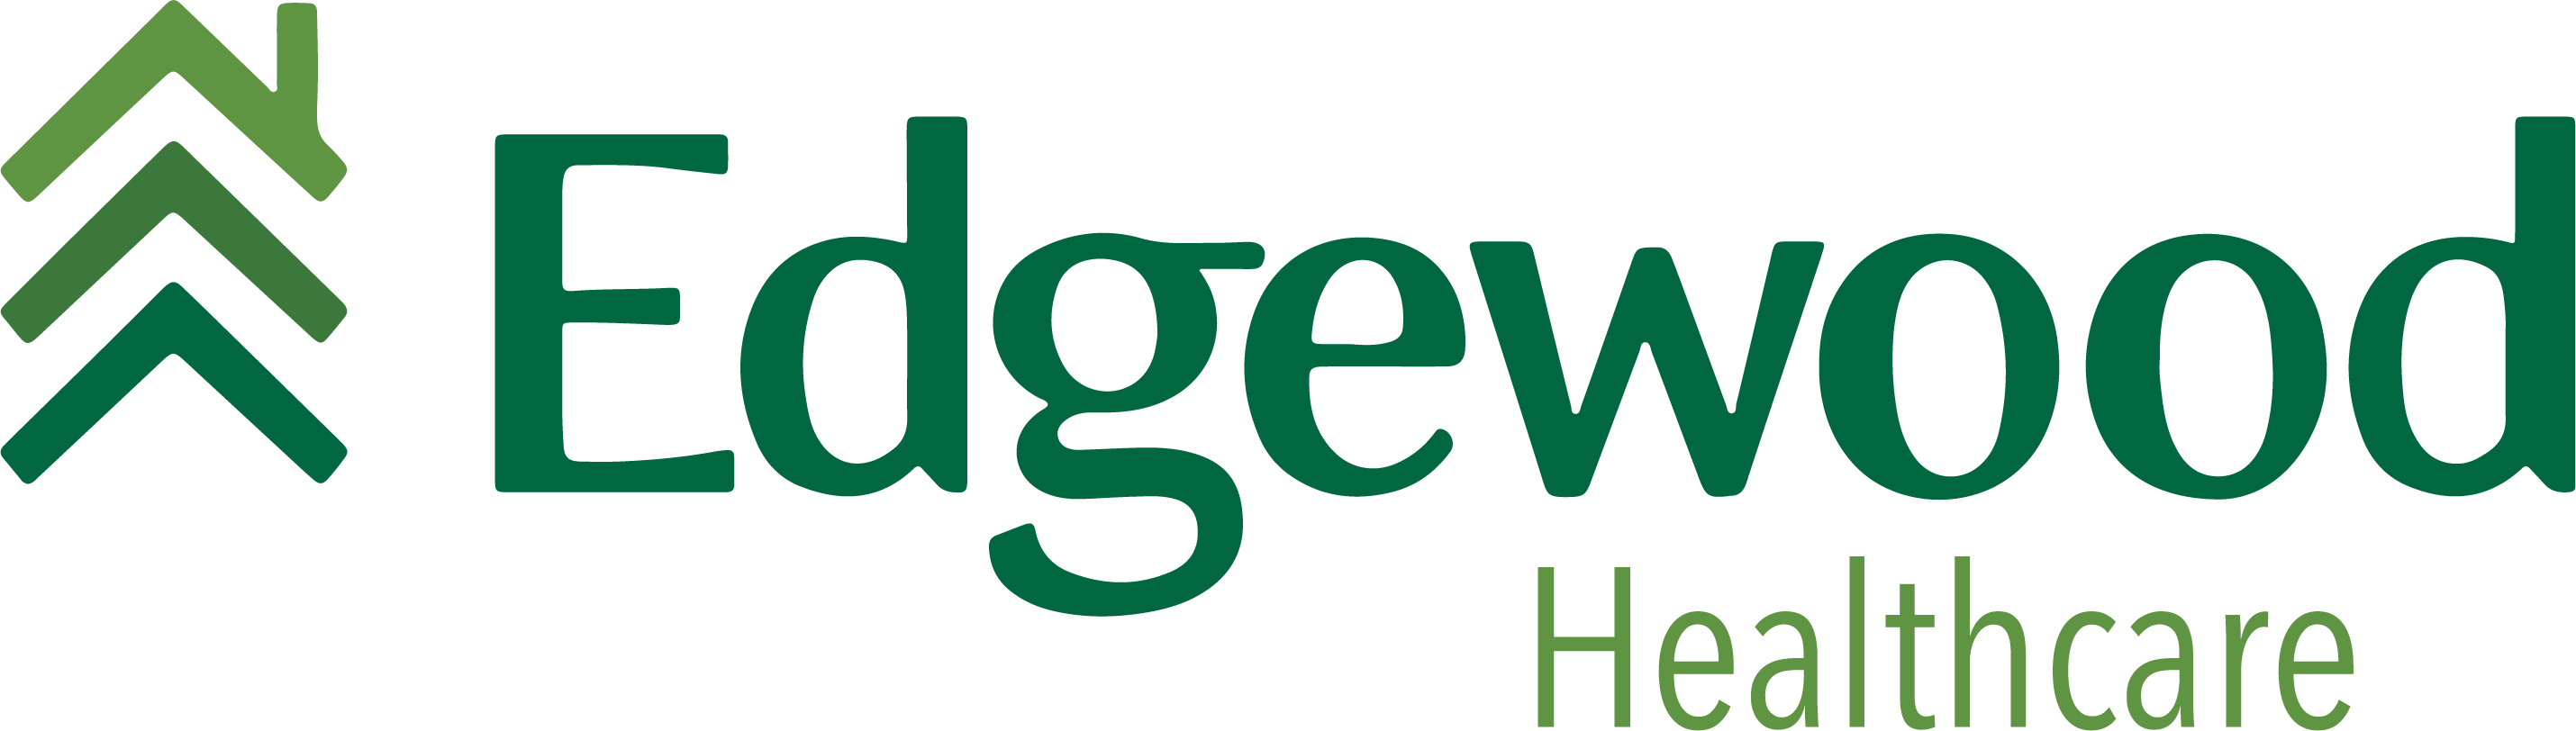 Edgewood Healthcare Logo